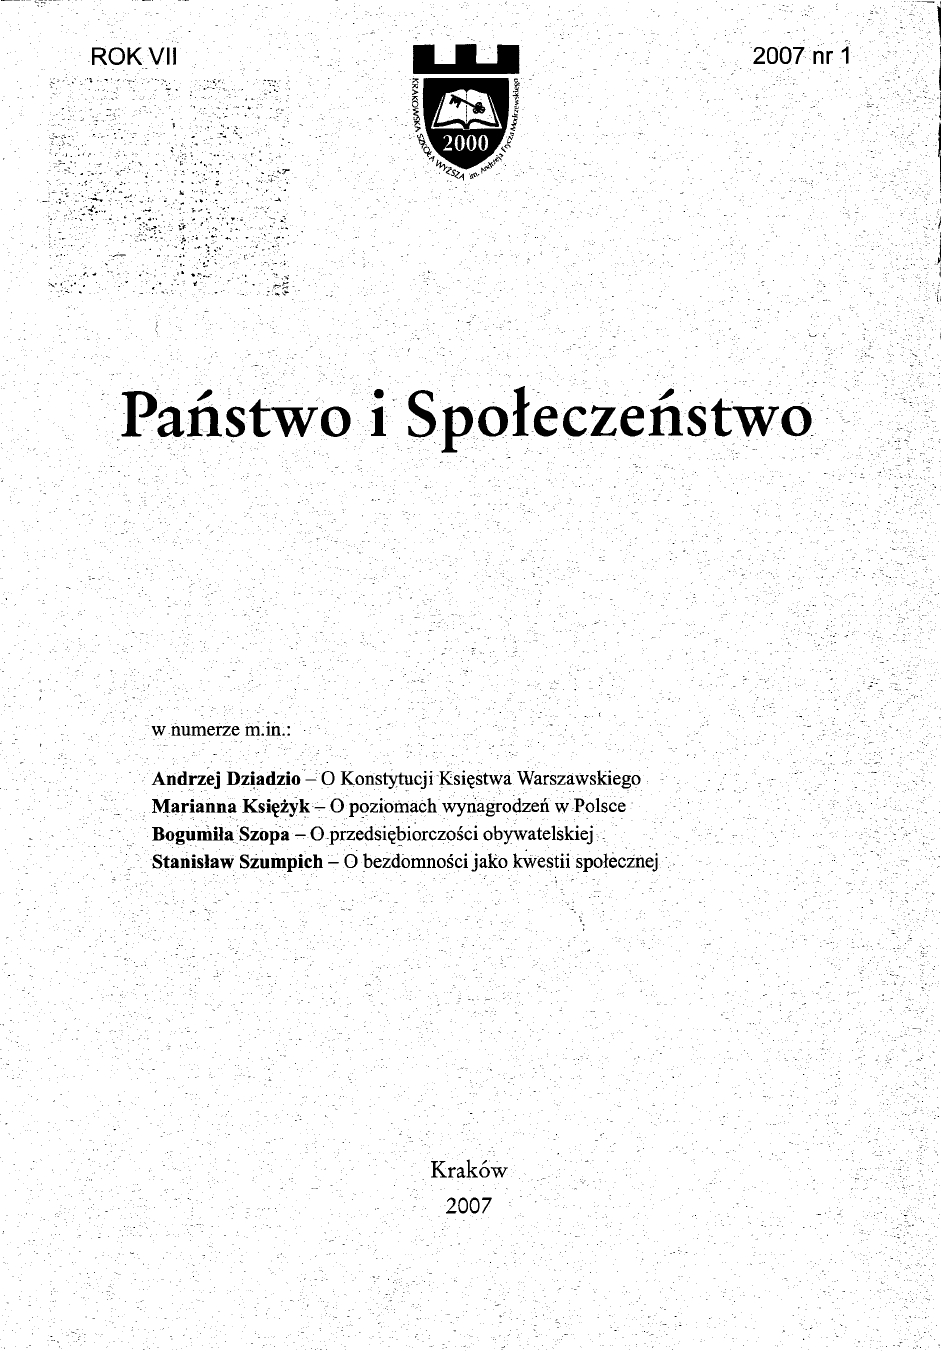 Konstytucja Księstwa Warszawskiego 1807. Polska odmiana bonapartyzmu.